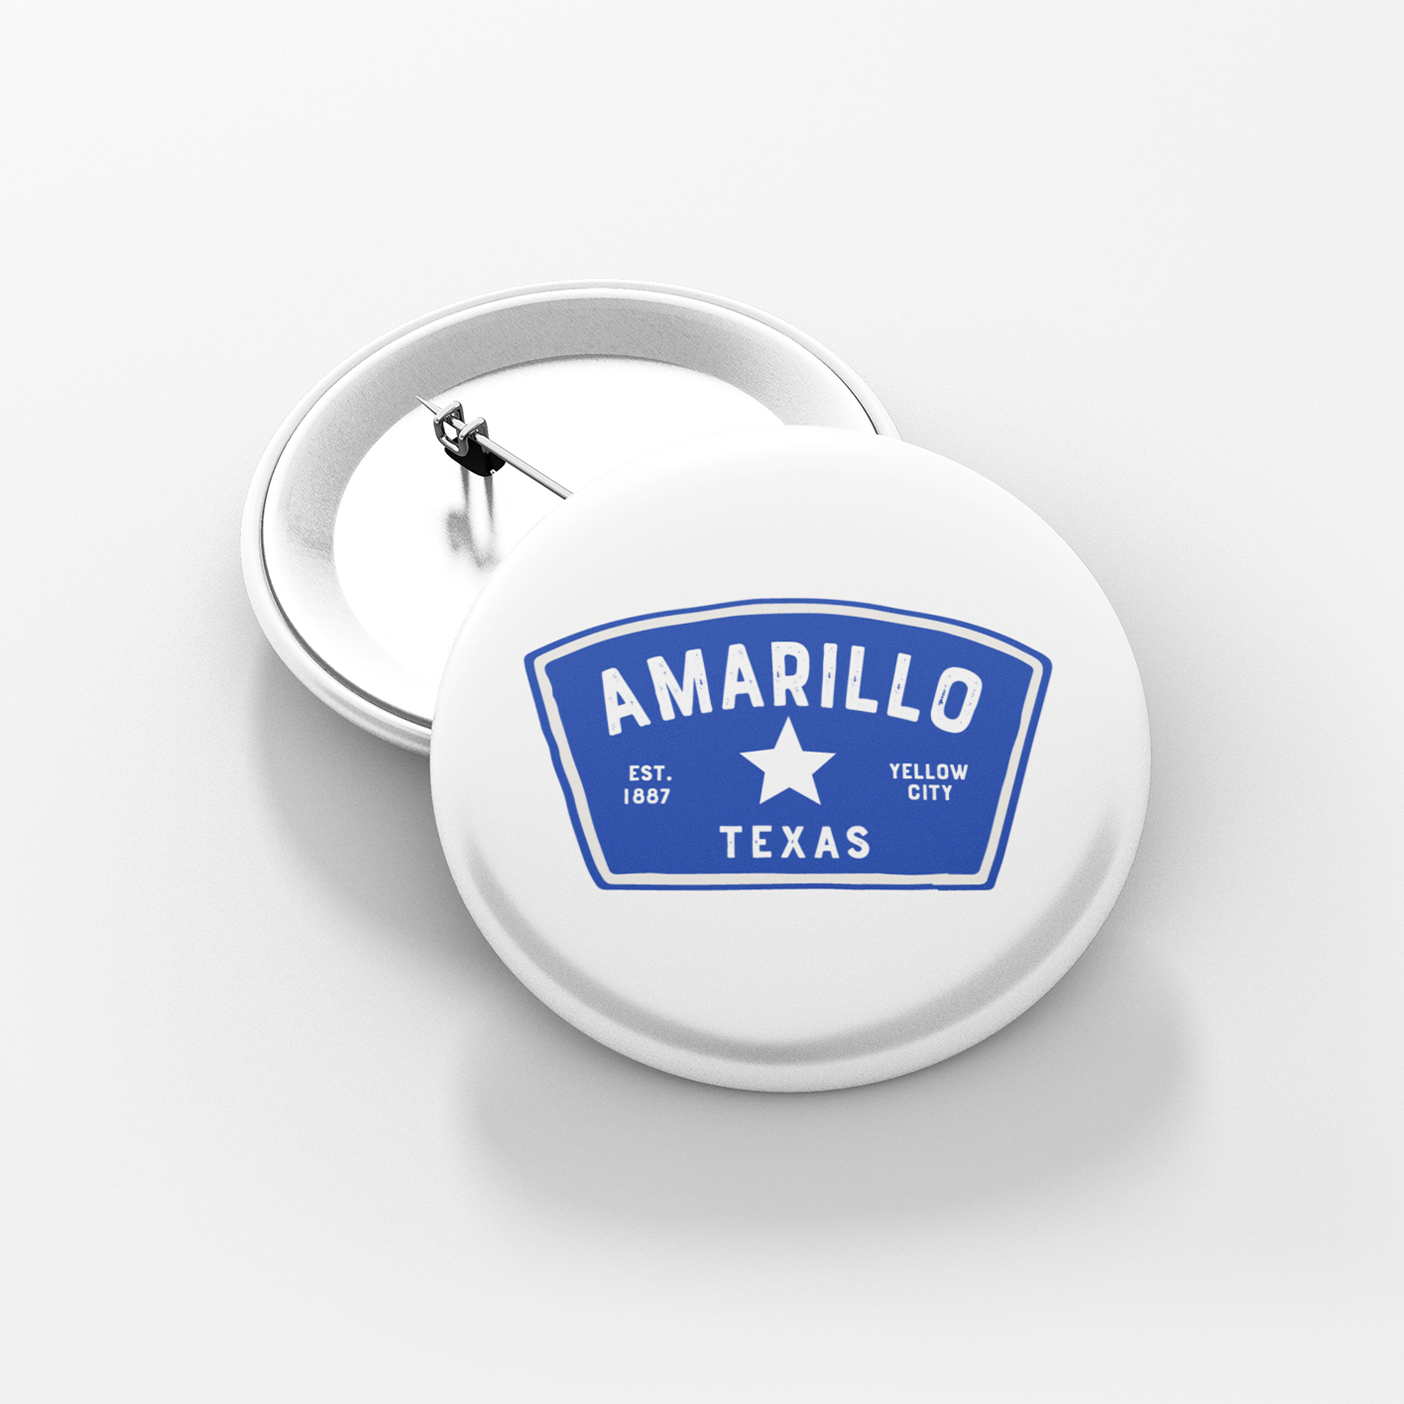 Amarillo Texas Button - Badge